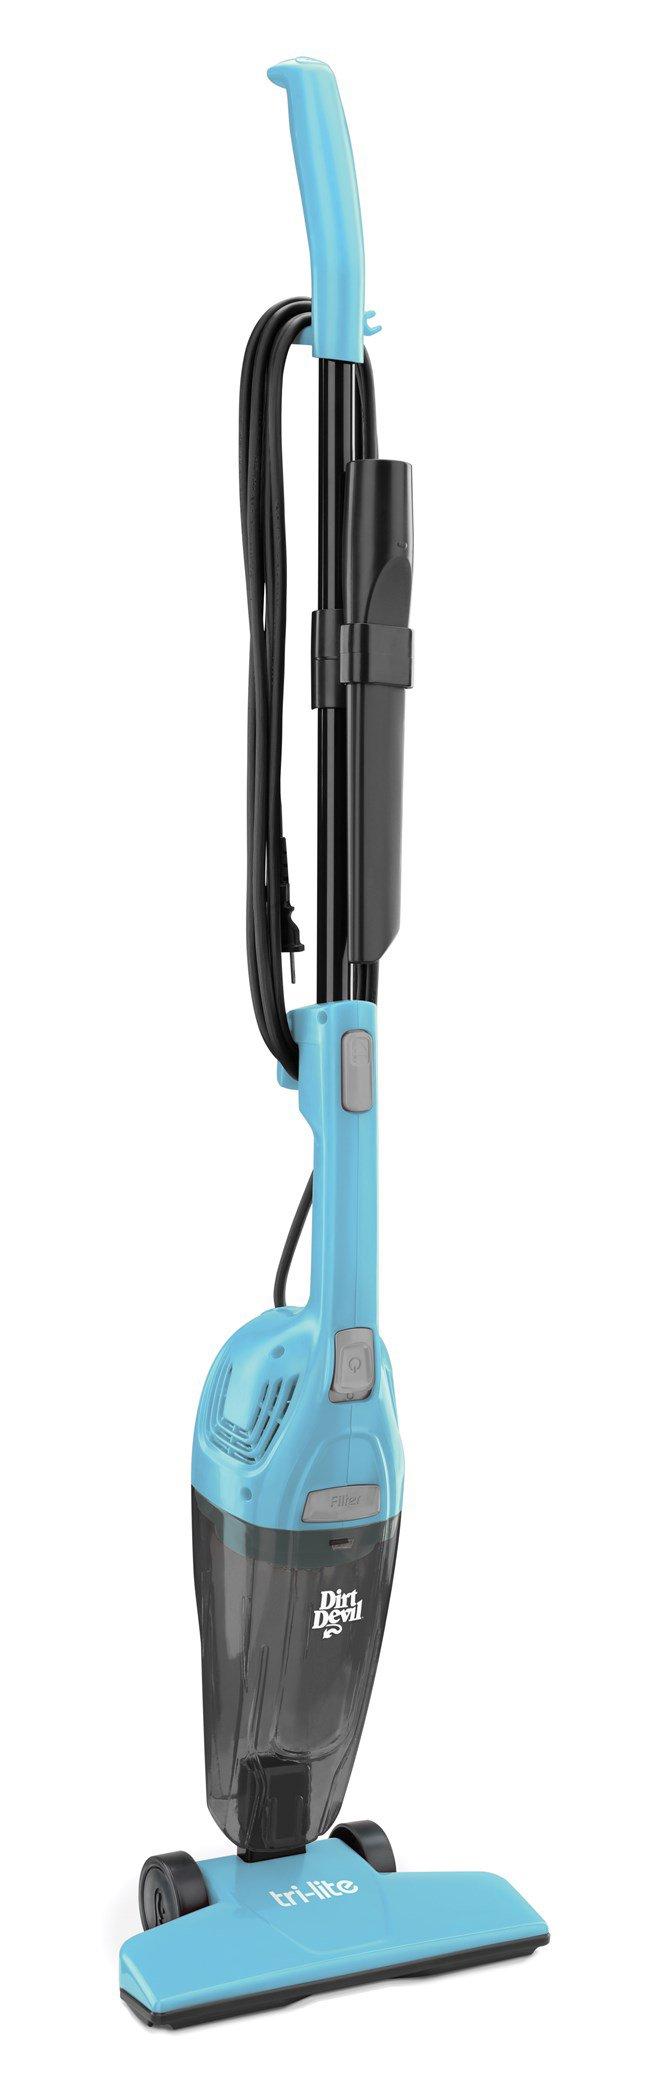 Tri-Lite Corded Stick Vacuum